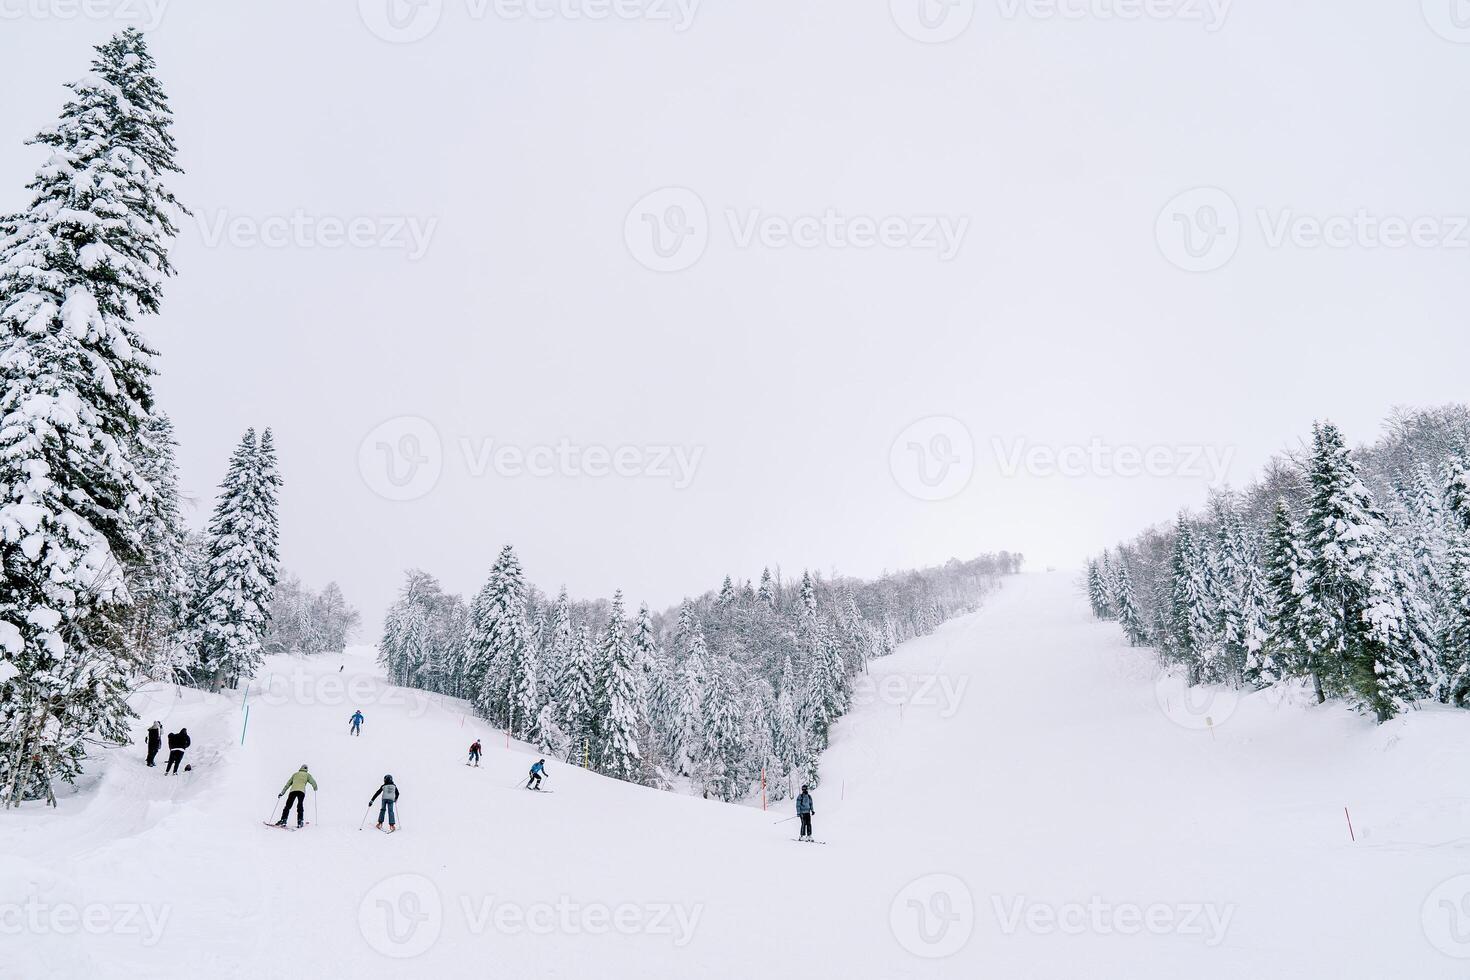 esquiadores esquí abajo un suavemente en pendiente nieve pista a lo largo un escarpado Pendiente y bosque foto